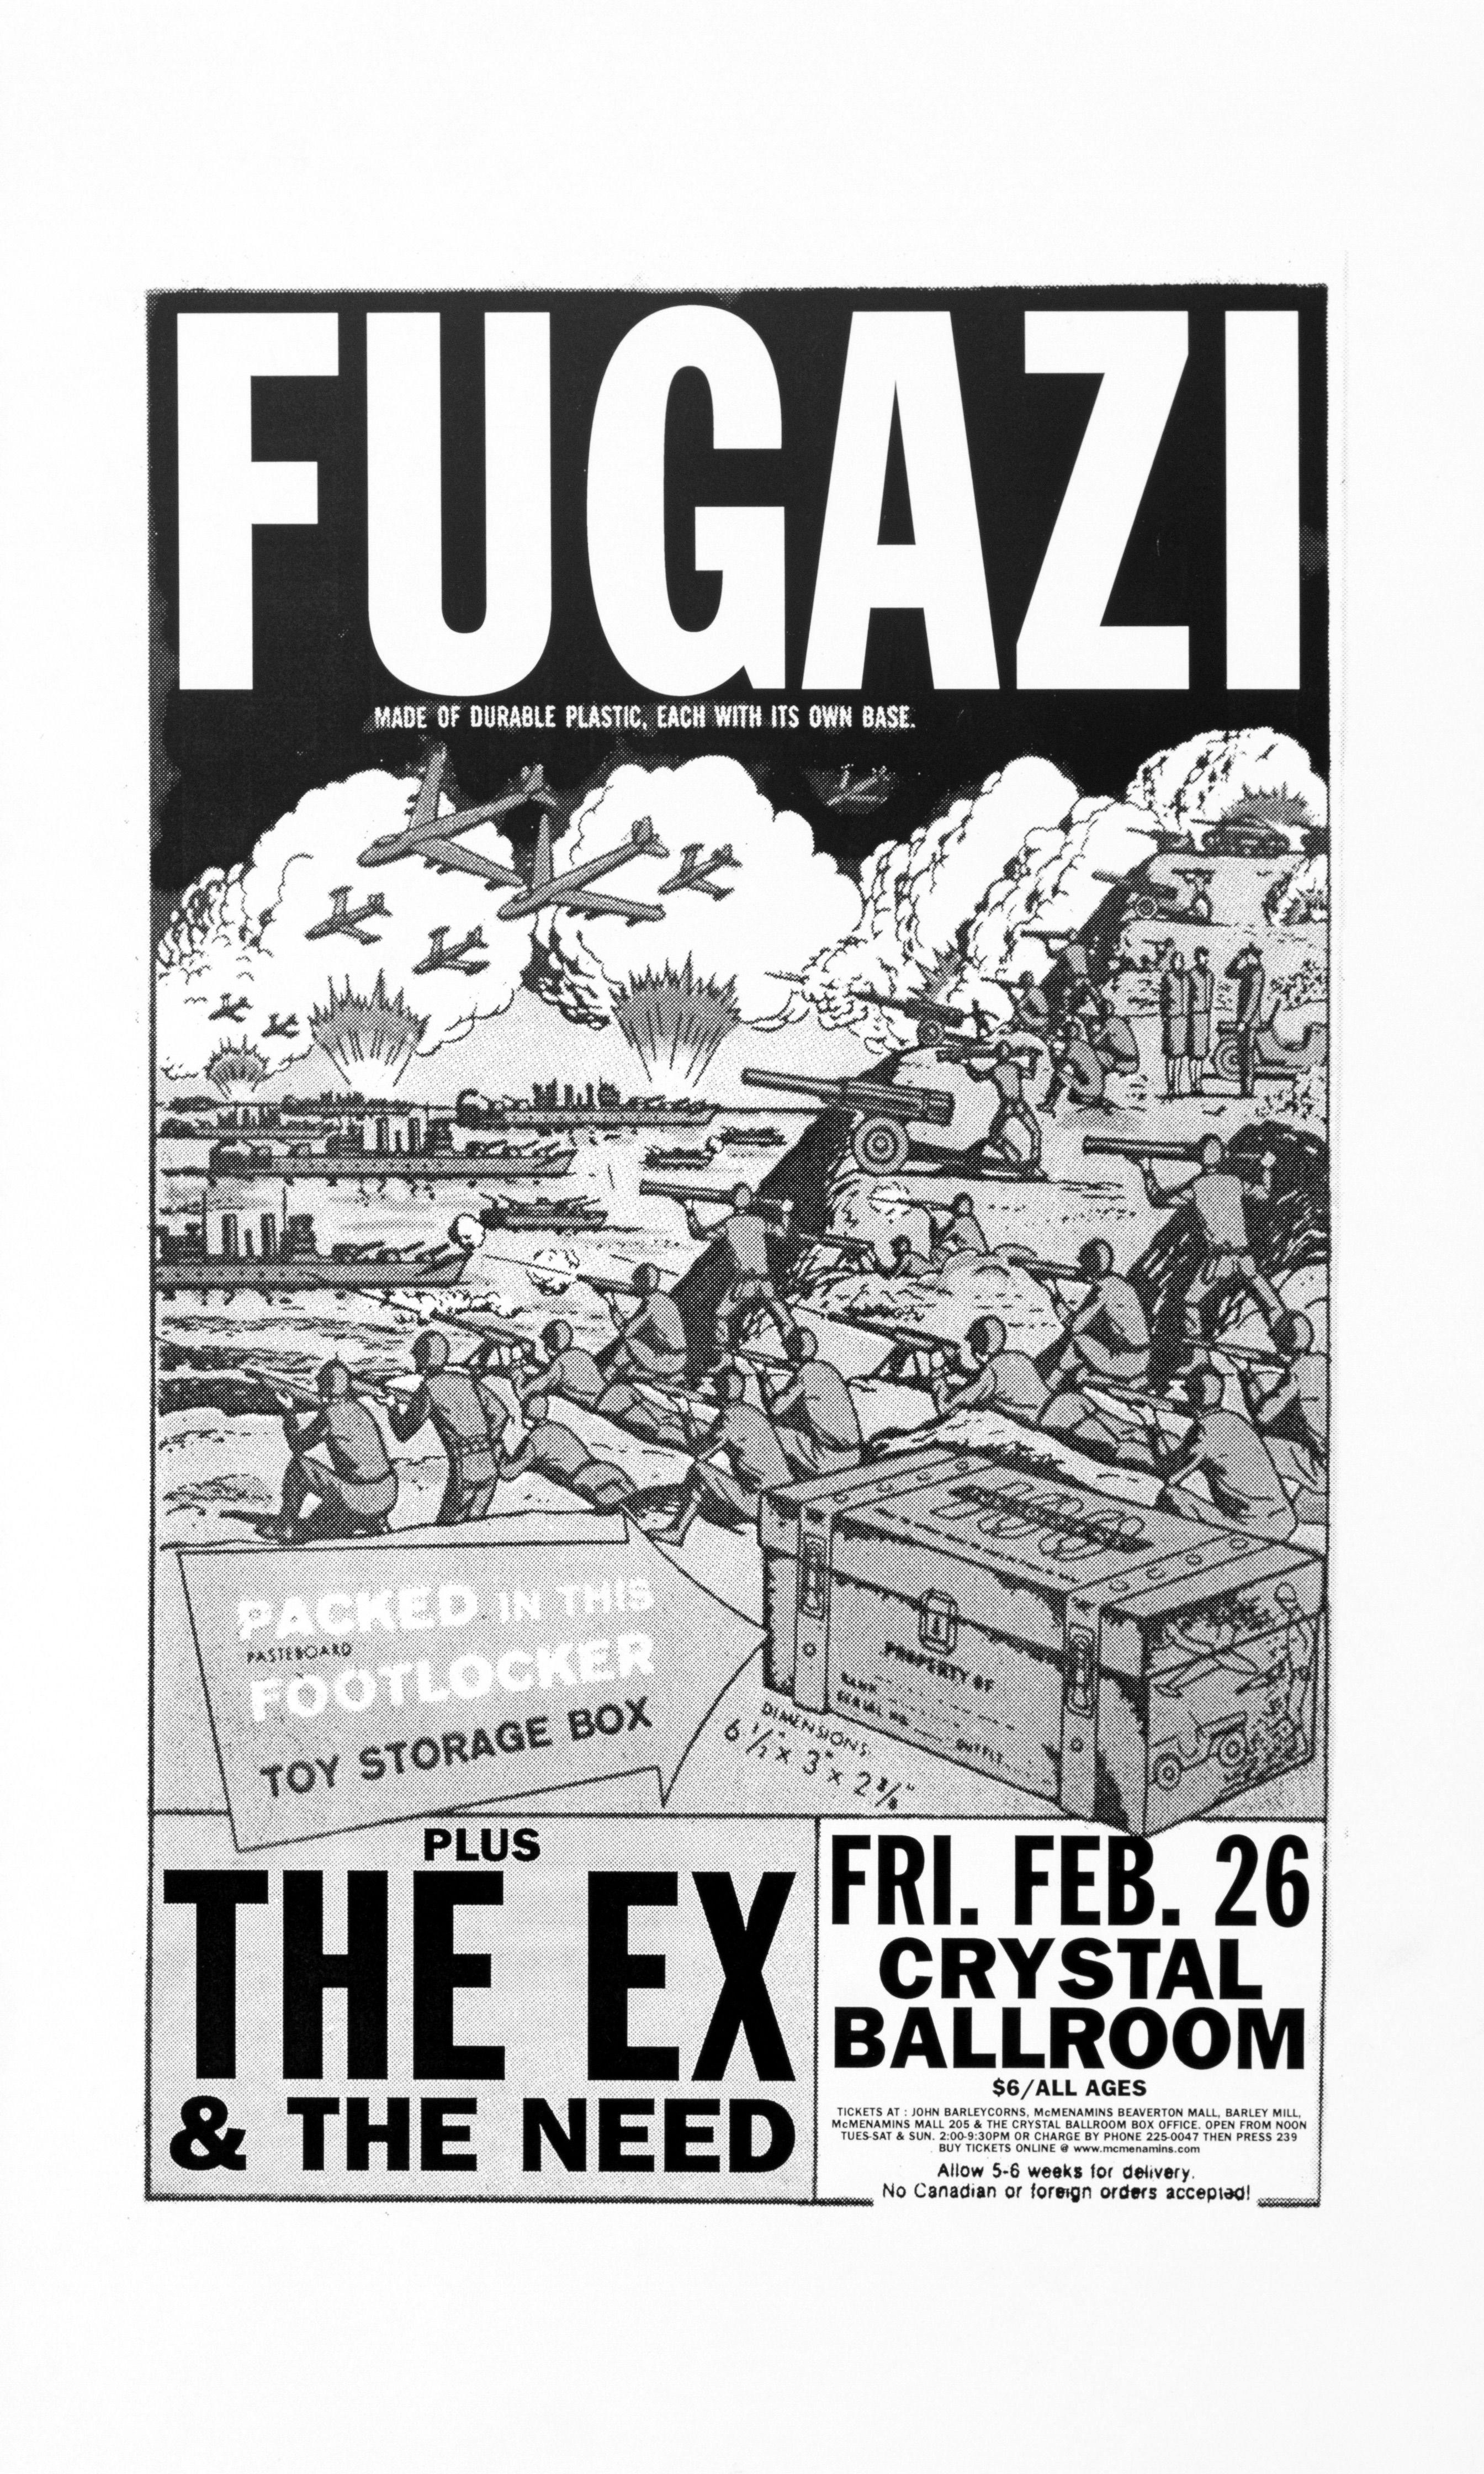 MXP-62.1 Fugazi 1999 Crystal Ballroom  Feb 26 Concert Poster